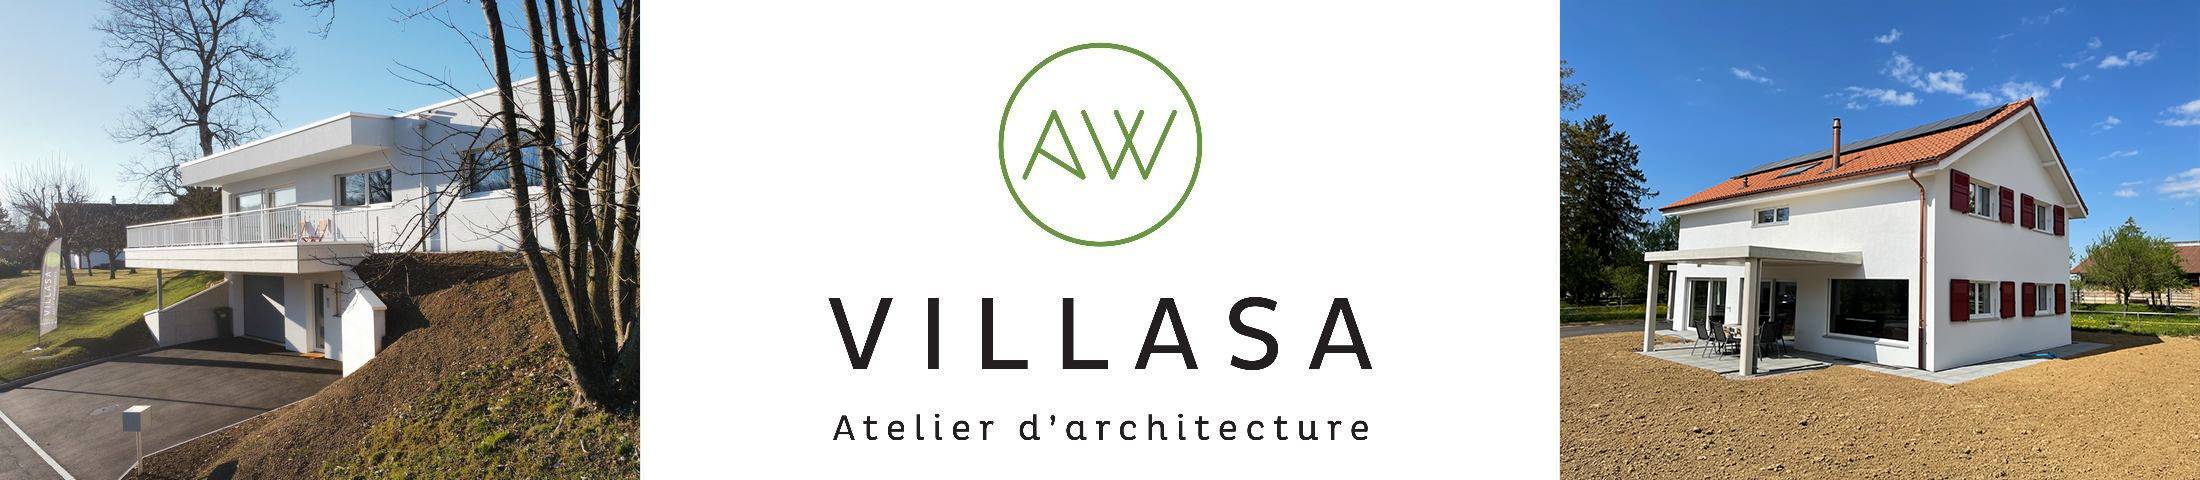 Un atelier d'architecture dynamique à votre service de conception, réalisation, rénovation Logo